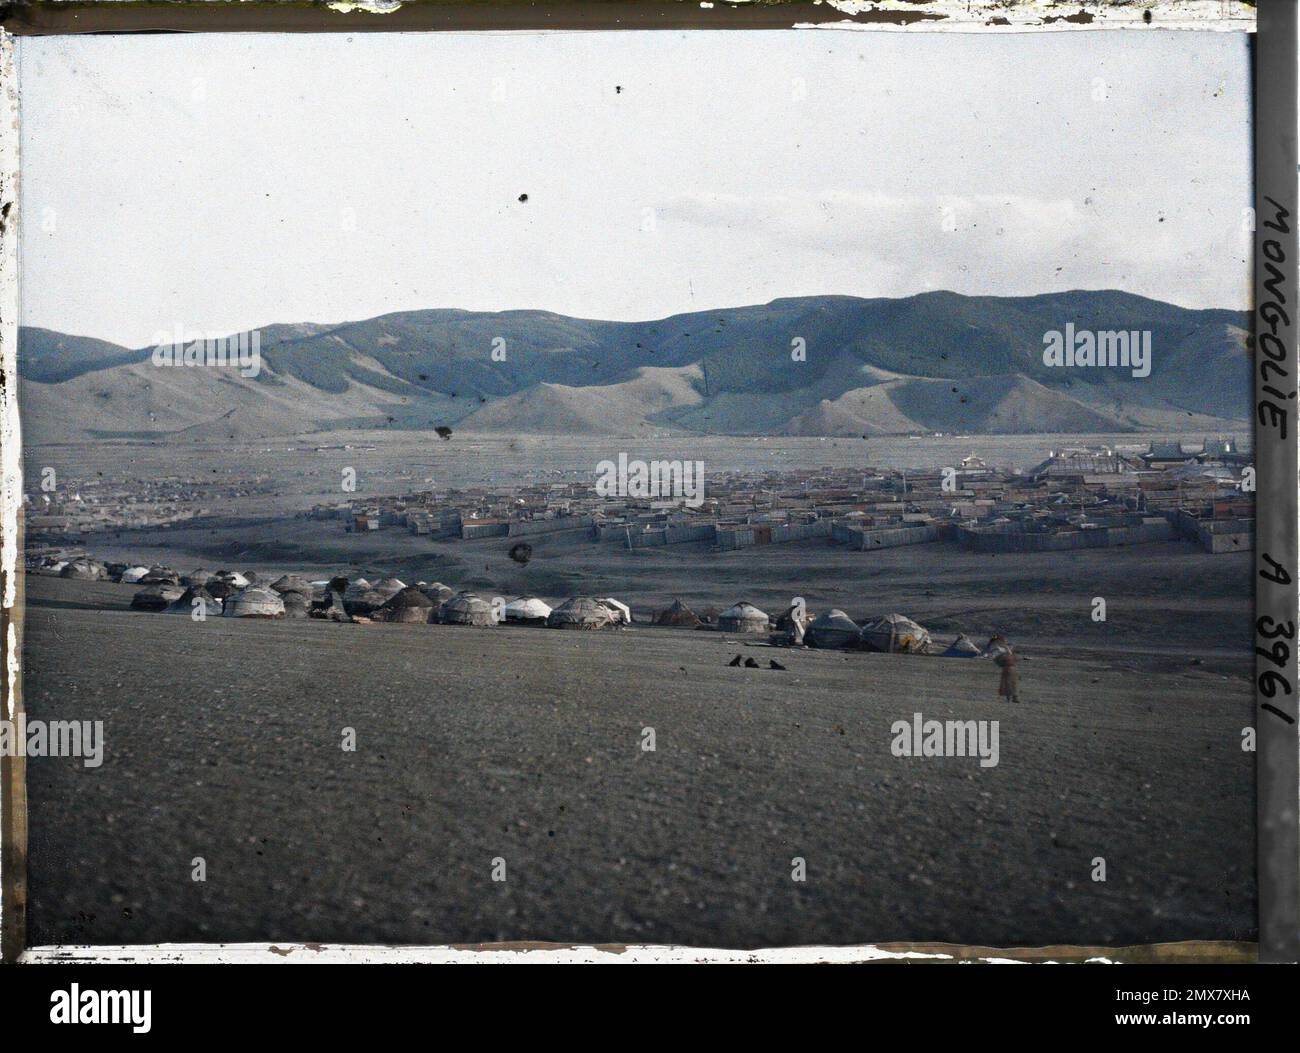 Orga, Mongolie vue panoramique de la partie orientale de Baruun Khüree ou Gandantegchinlin, la ville des Lamas , 1913 - Mongolie - Stéphane Passet - (6-25 juillet) Banque D'Images